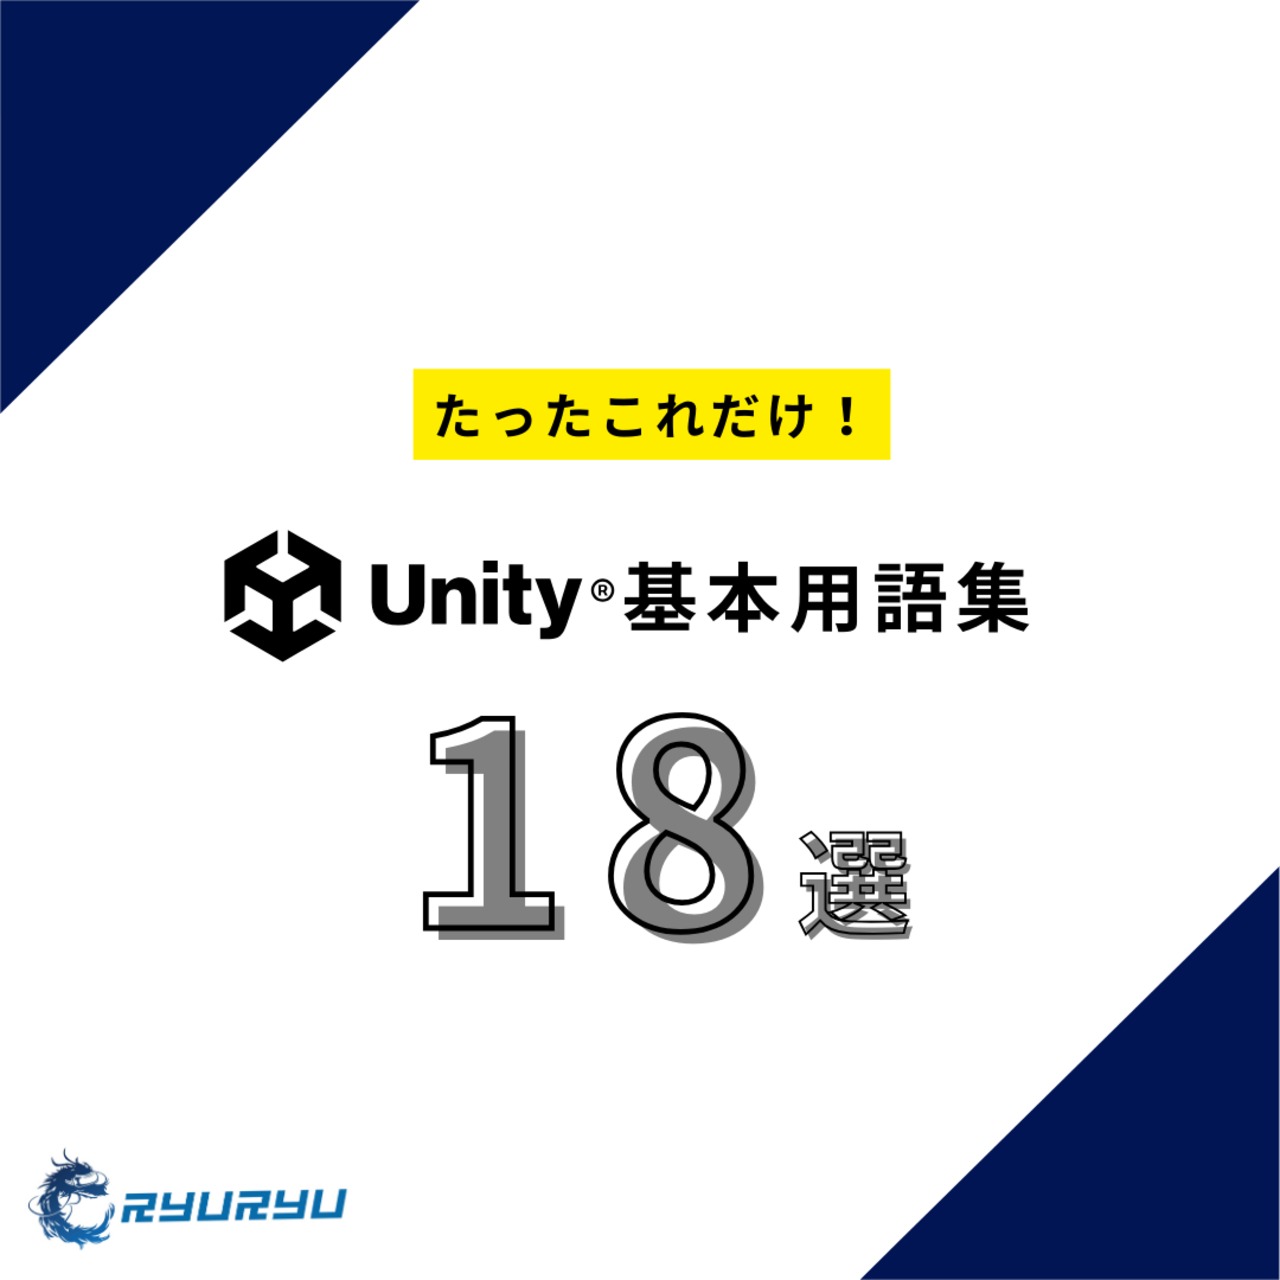 Unity基本用語集【公式LINE登録で無料配布中】